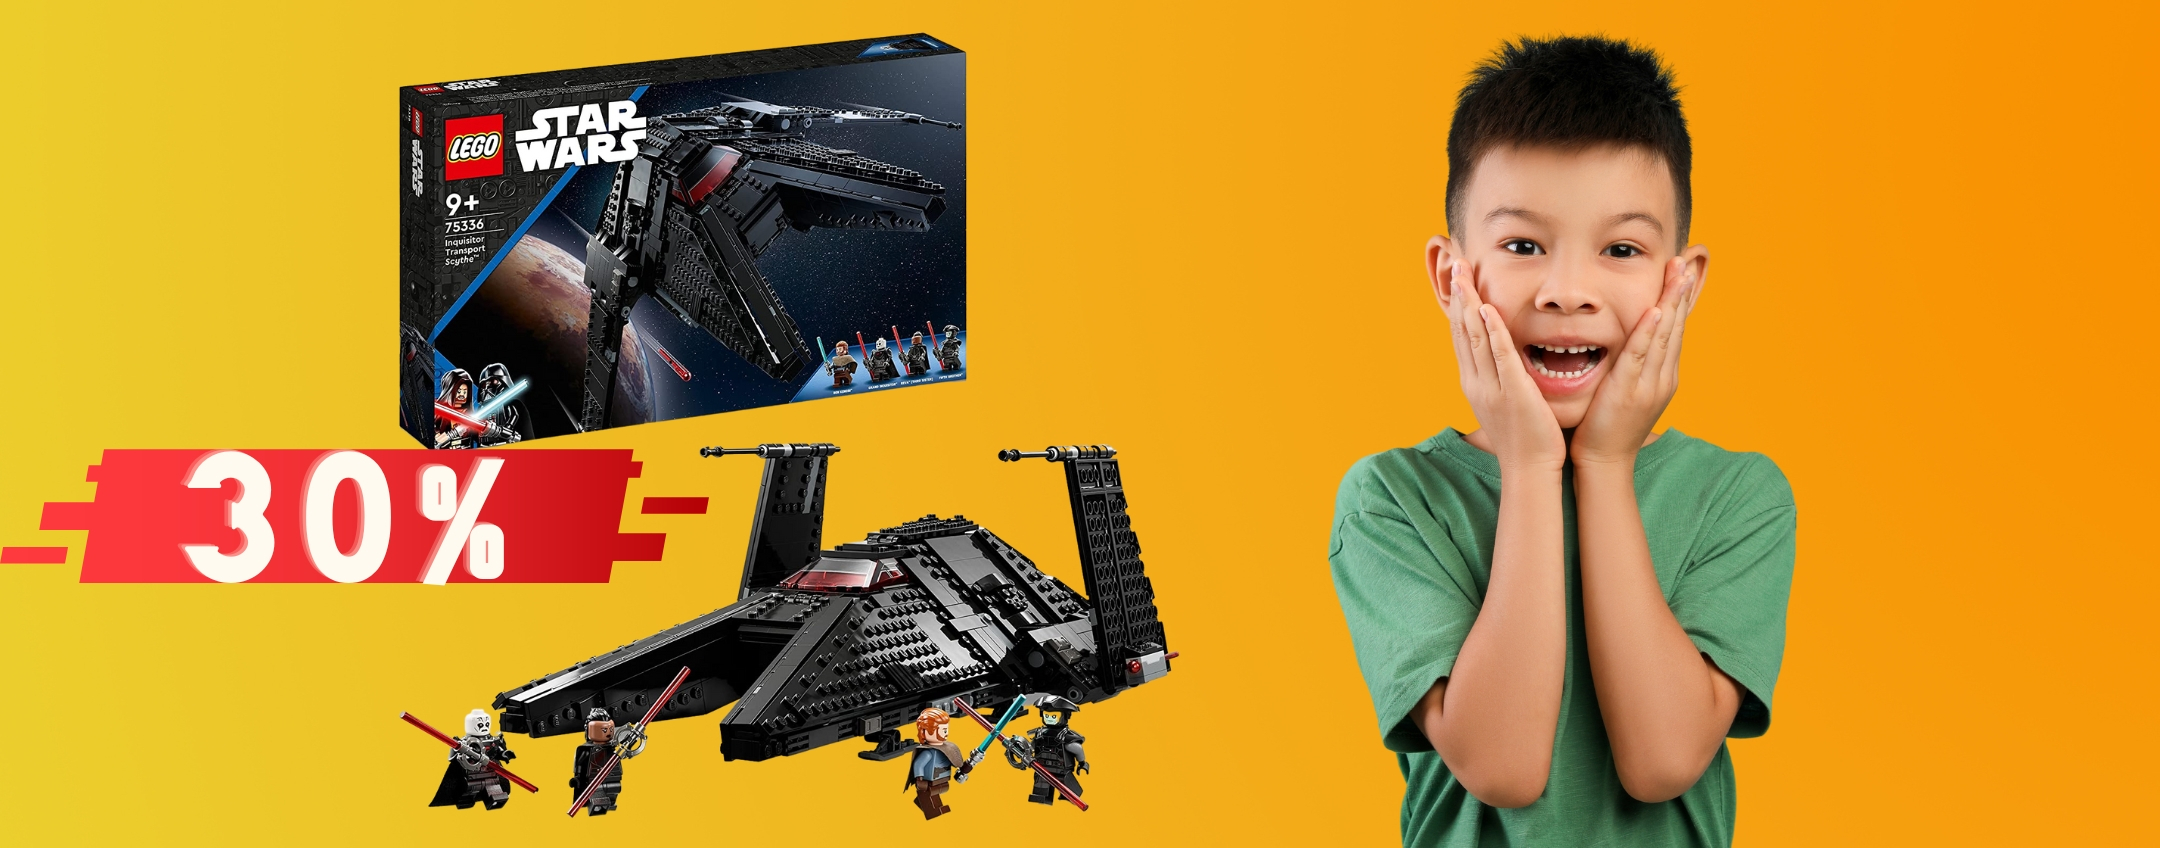 LEGO Star Wars al prezzo più BASSO di SEMPRE, il regalo perfetto